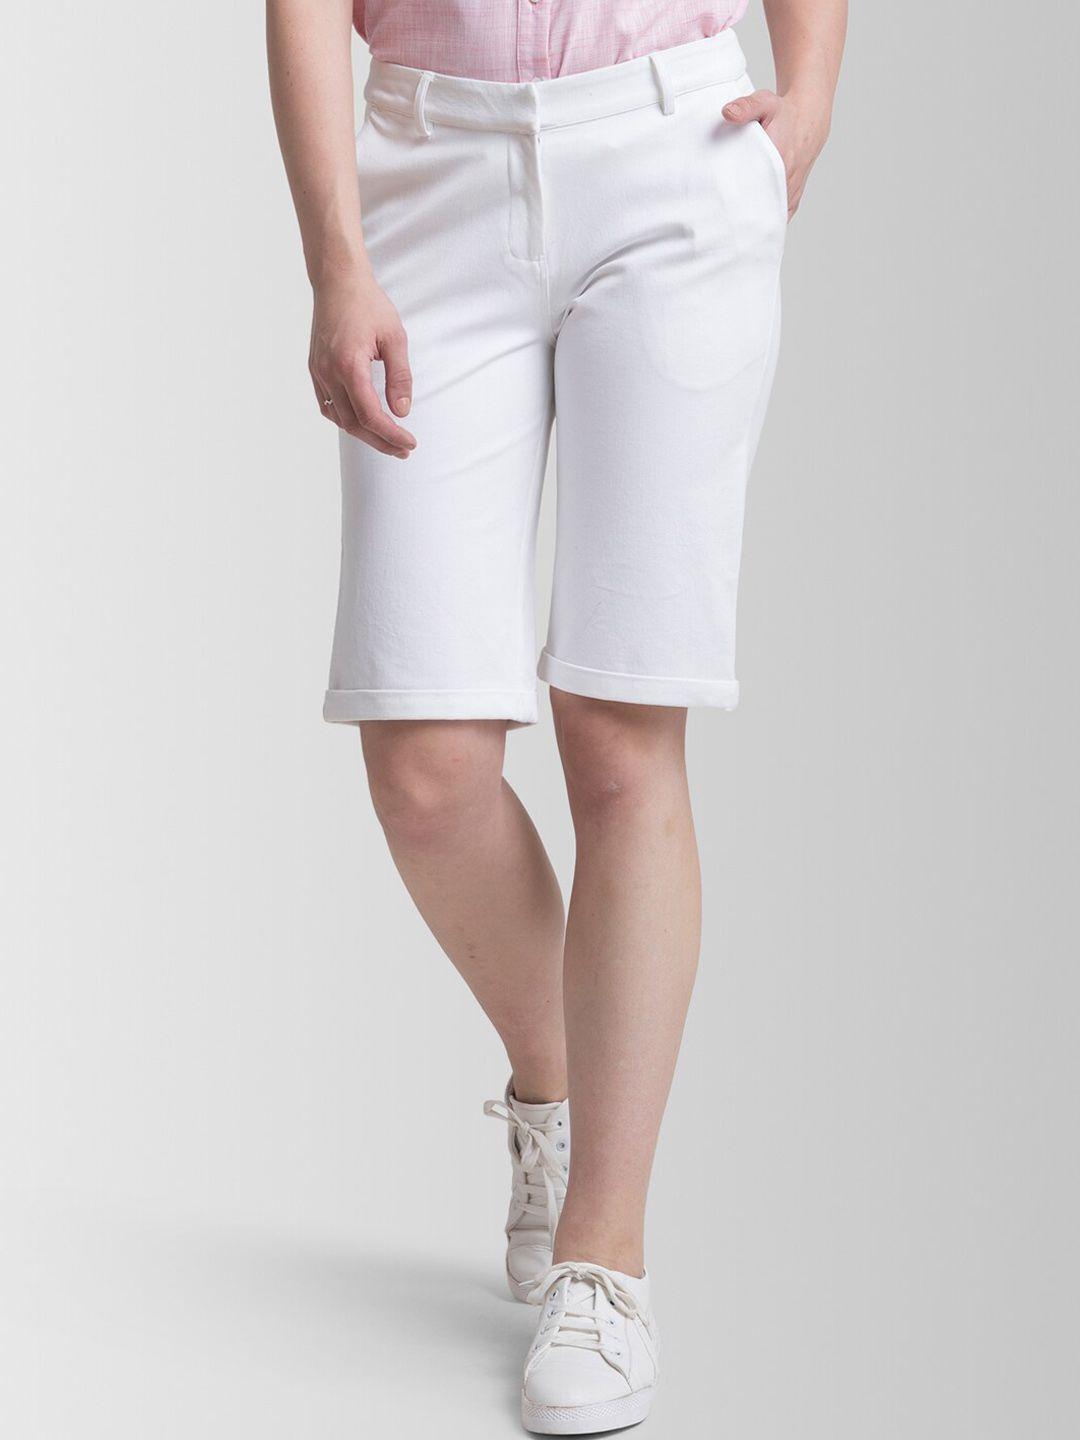 fablestreet women white solid regular shorts